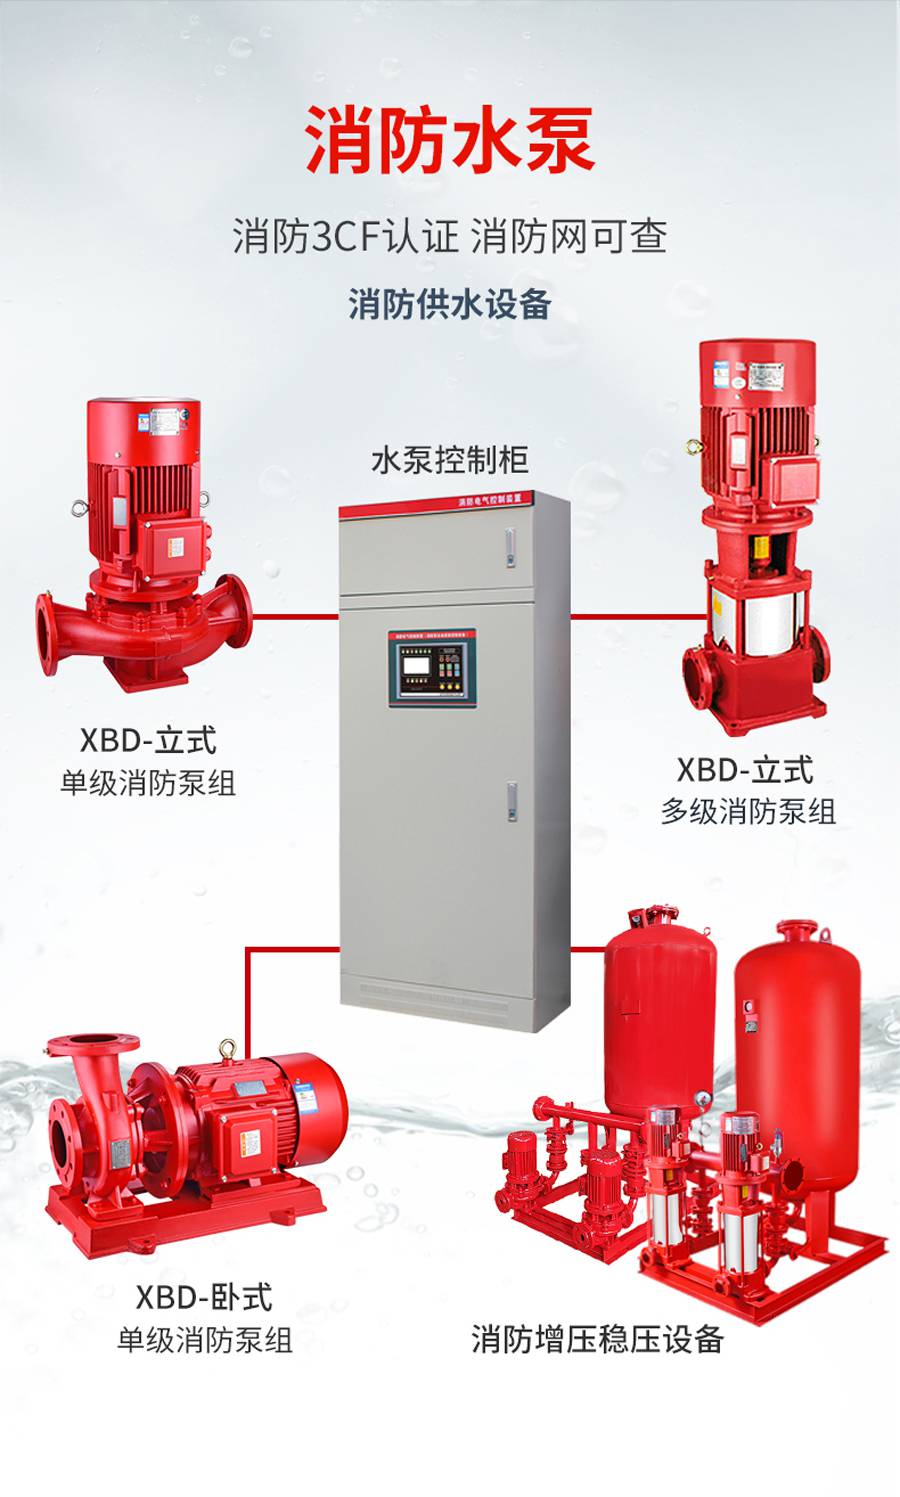 自动消防灭火系统xbd44/25g-l消防泵型号规格消防喷淋泵的作用厂家